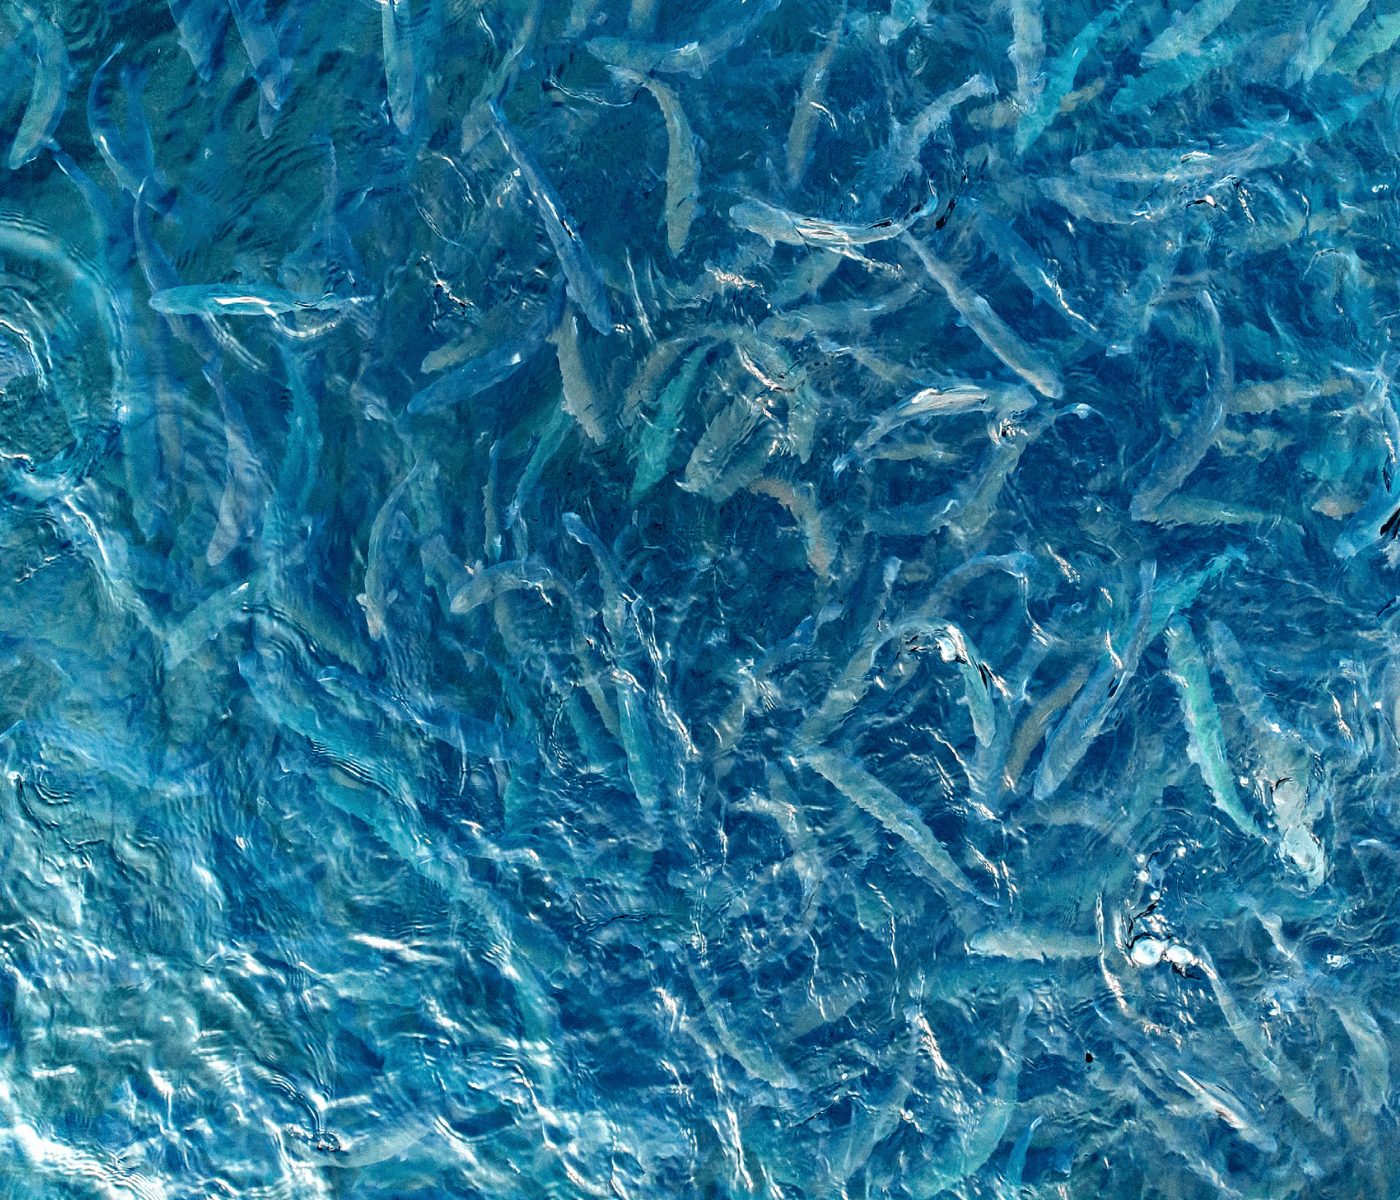 Nutrição micromineral e oportunidades na aquacultura do século XXI